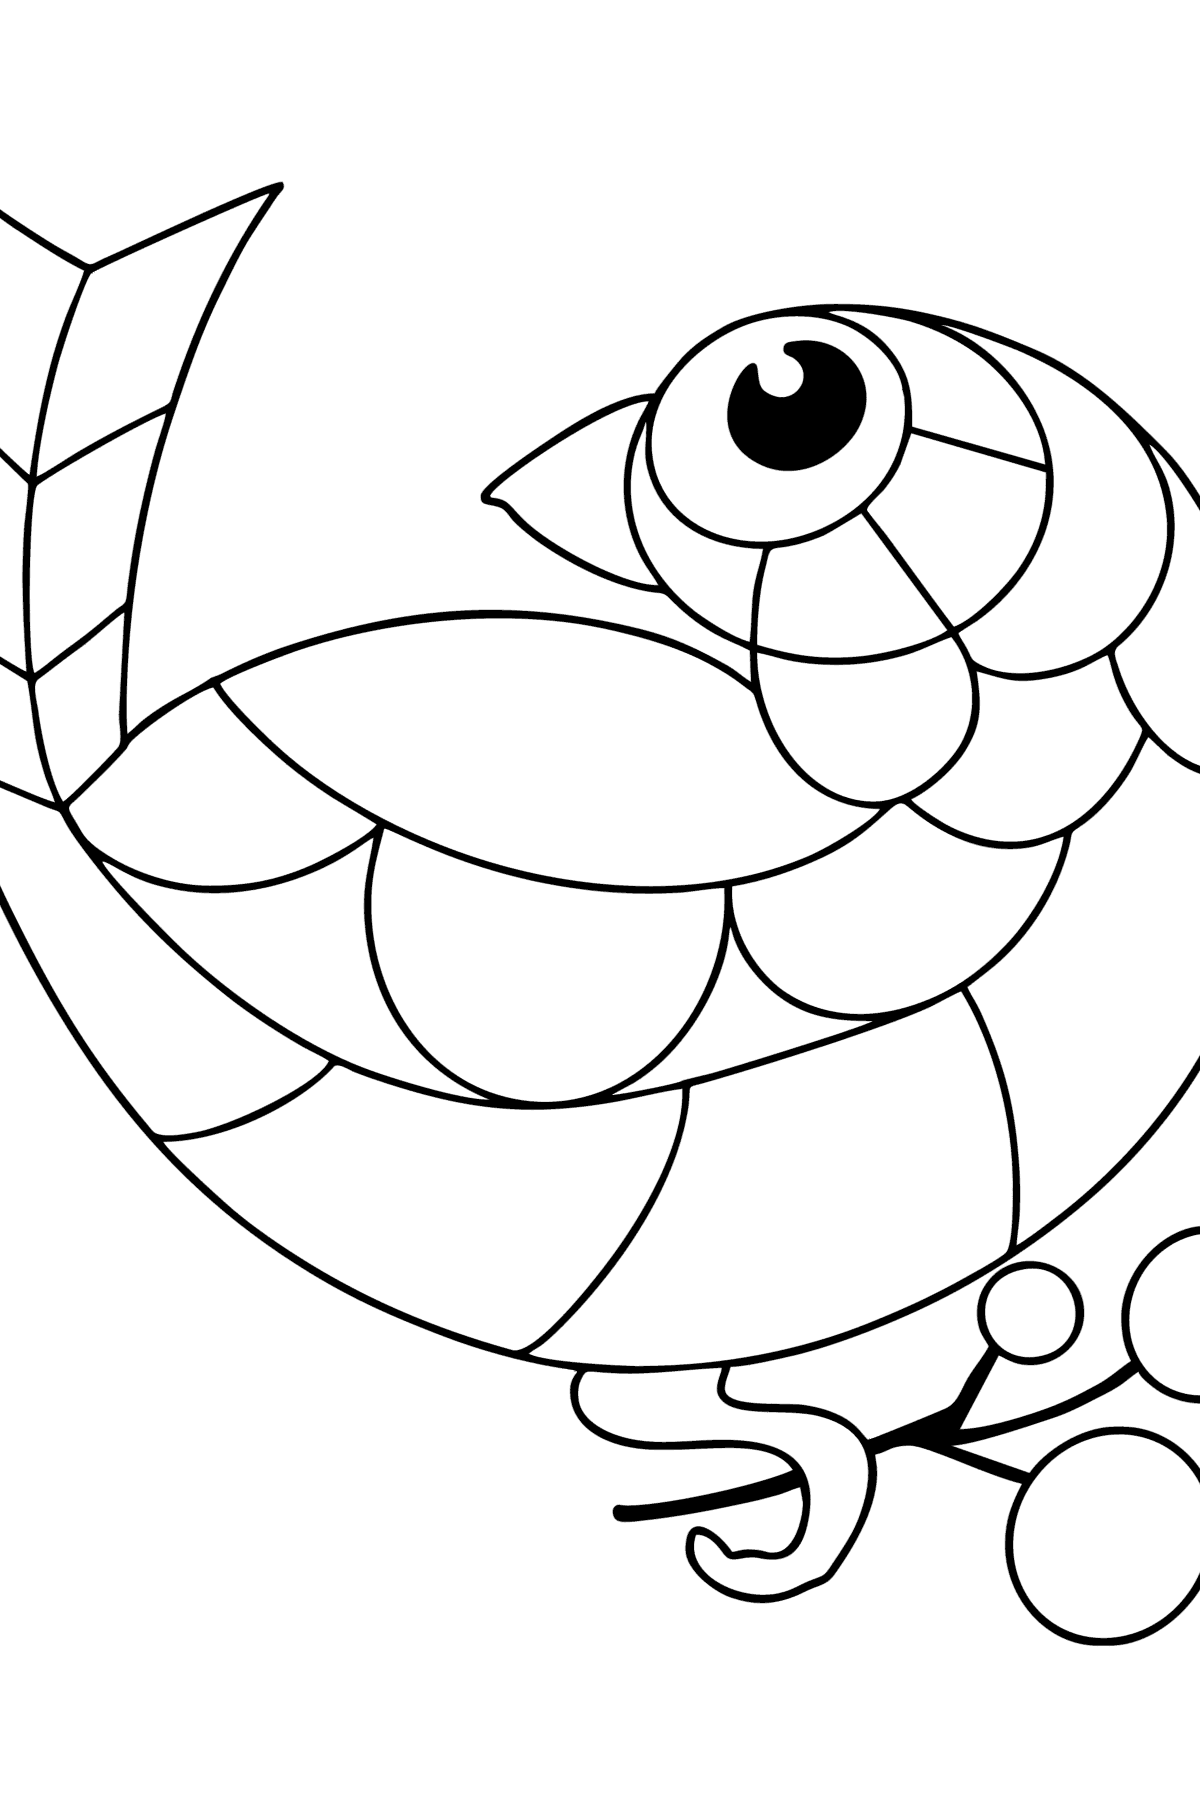 Раскраска антистресс птичка - Картинки для Детей